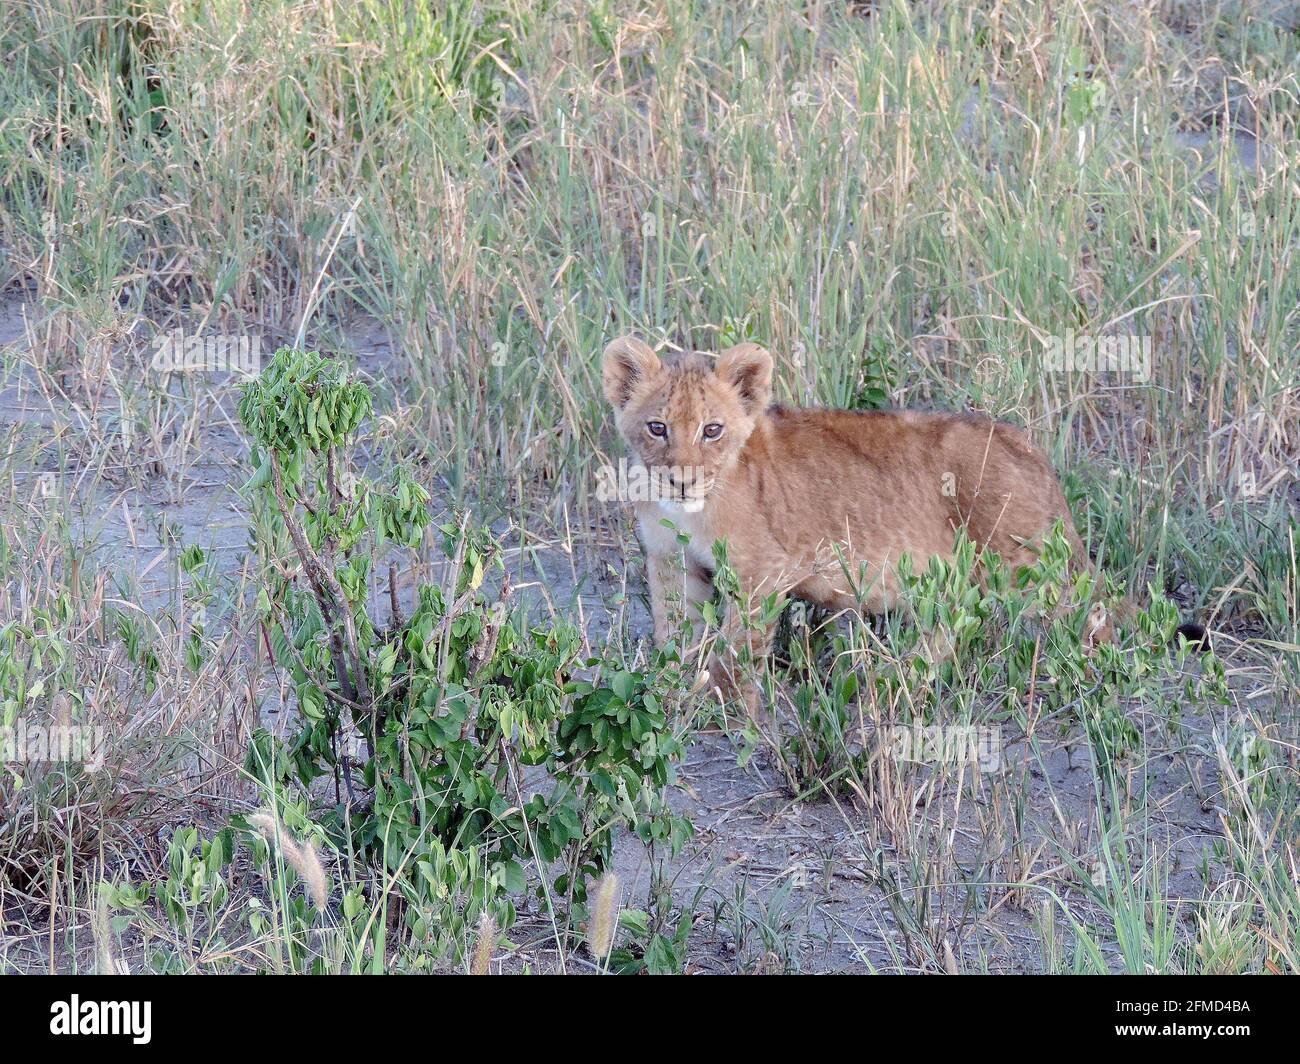 Jeune lion cub dans la grande herbe de la savane tanzanienne Afrique de l'est Banque D'Images